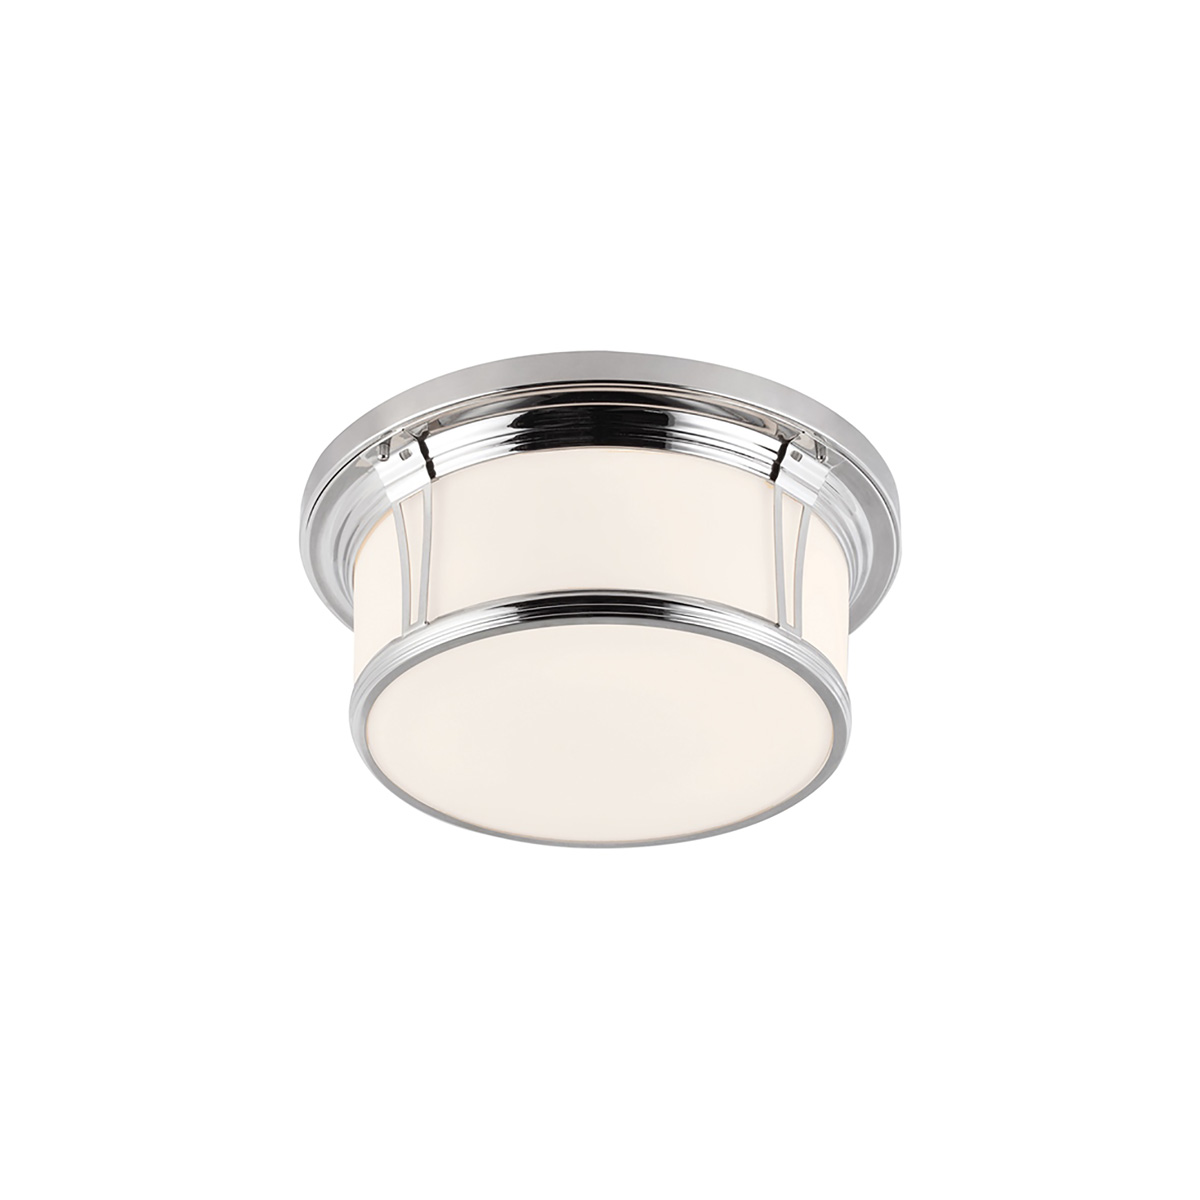 Потолочный светильник для ванных комнат FE-WOODWARD-F-L, Потолочные светильники для ванных комнат Классический | Никель полированный | Ванная комната.